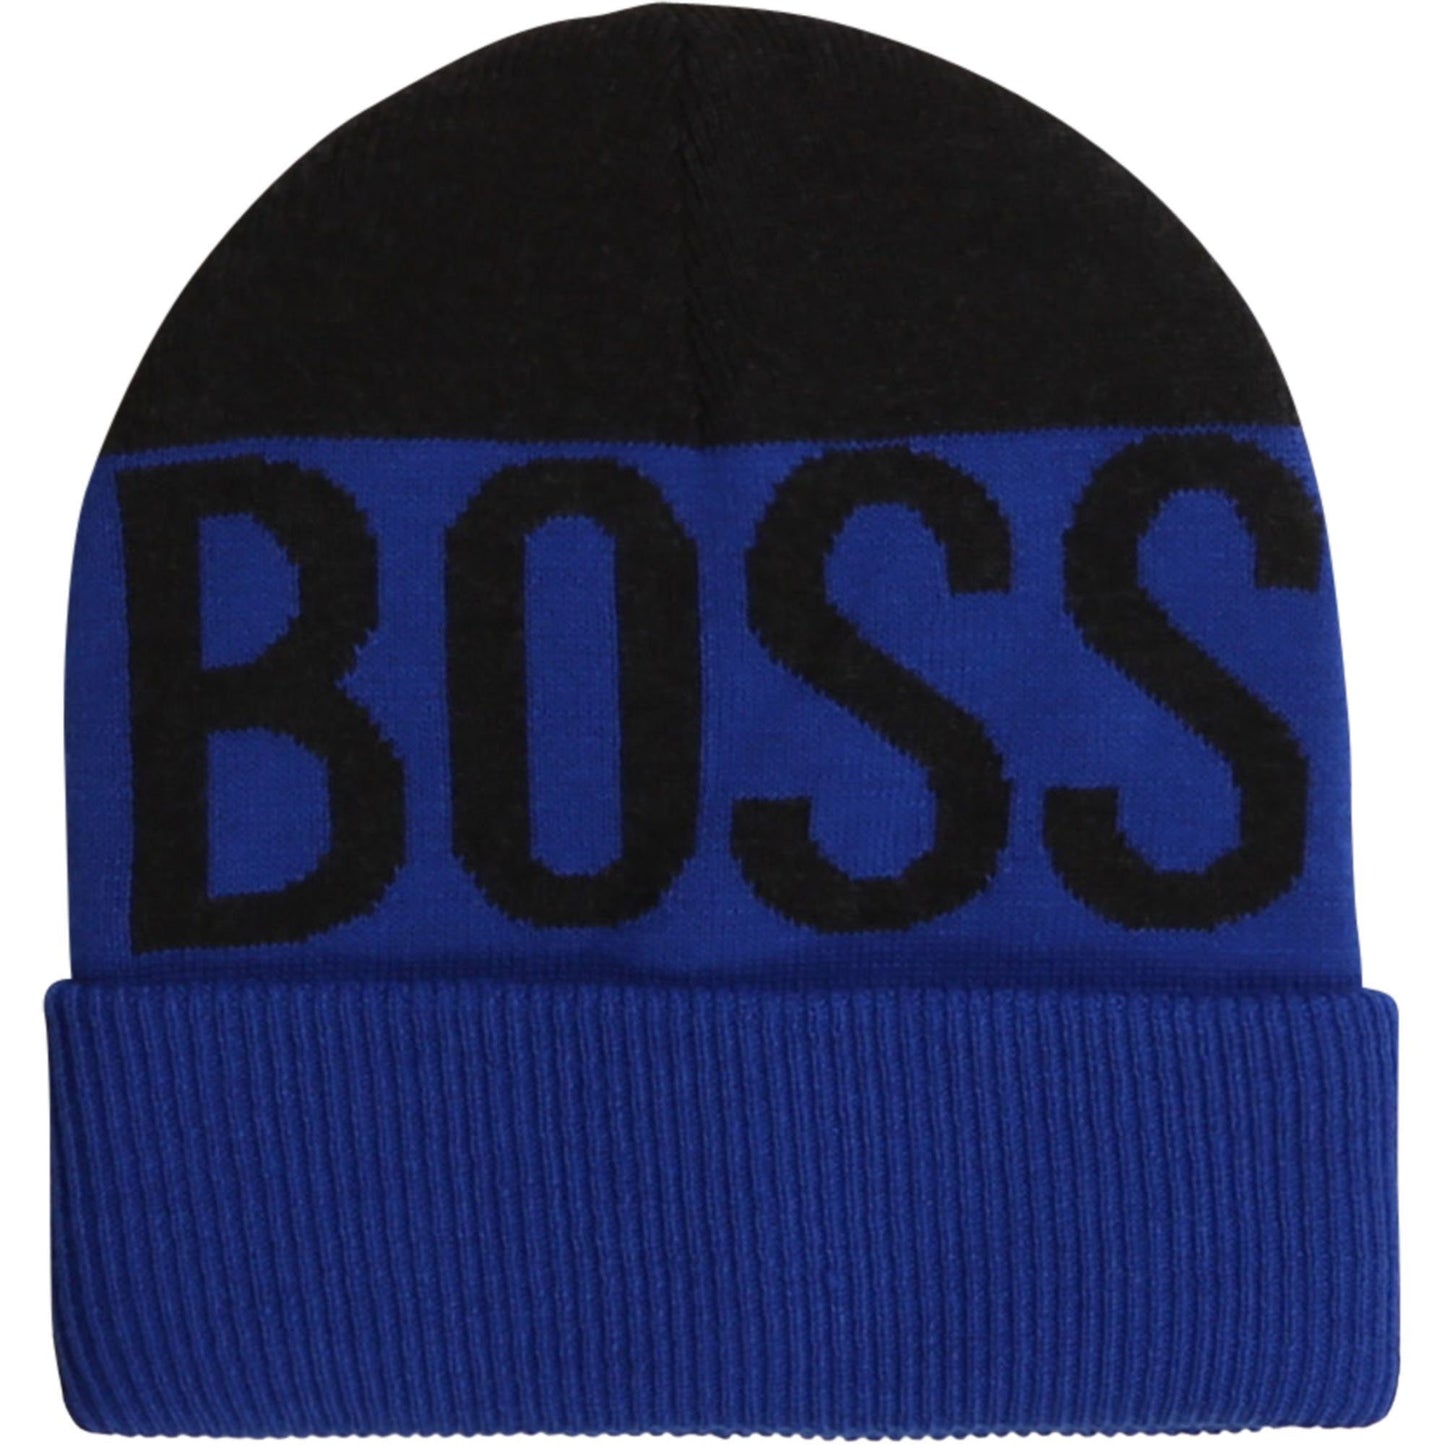 Hugo Boss Boys Pull on Hat Outerwear Hugo Boss 56 Blue 